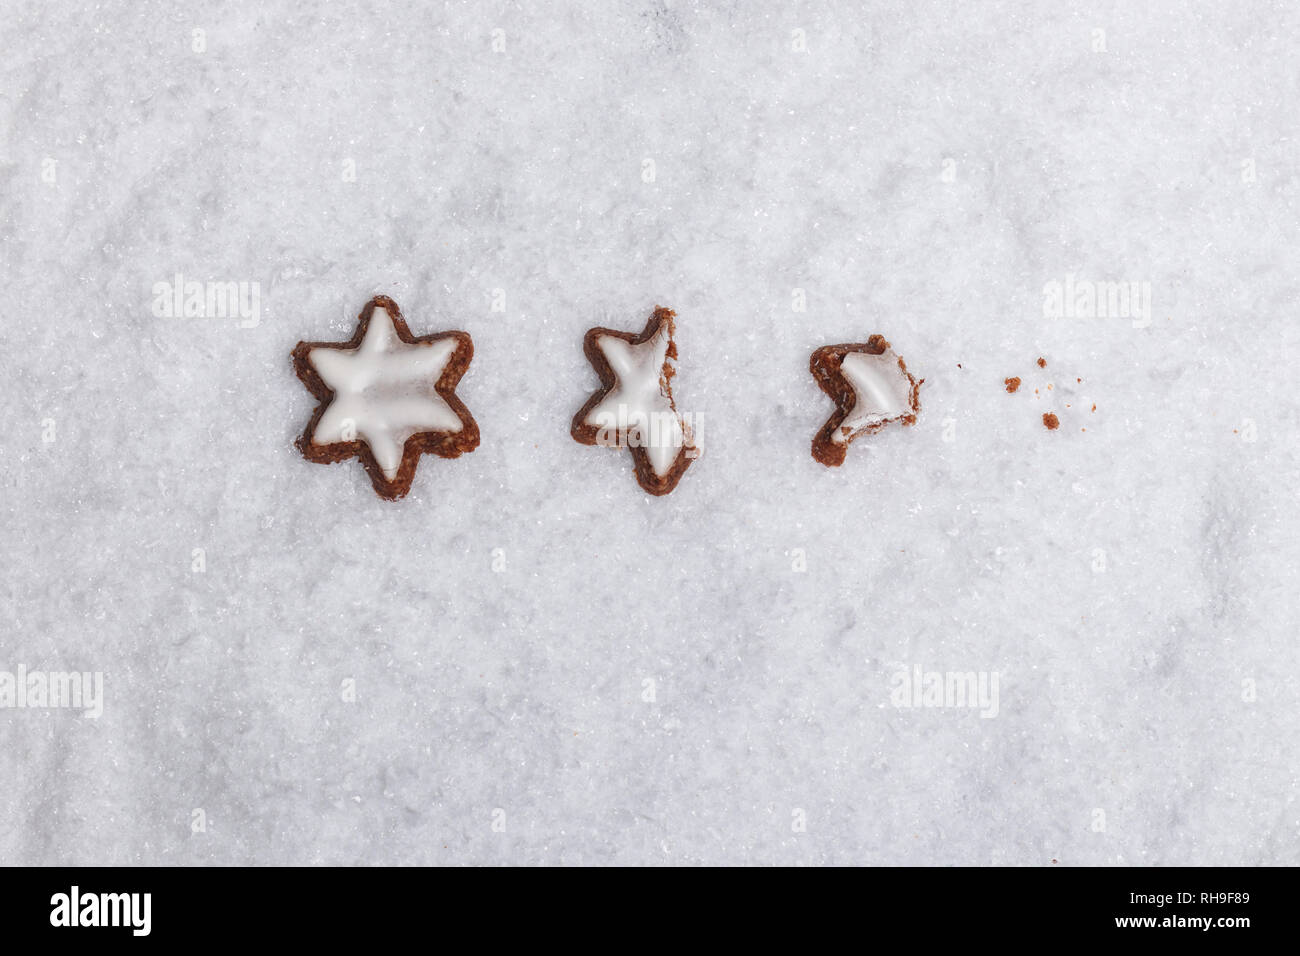 Roer off canela estrellas sobre nieve blanca como símbolo de la época de adviento Foto de stock